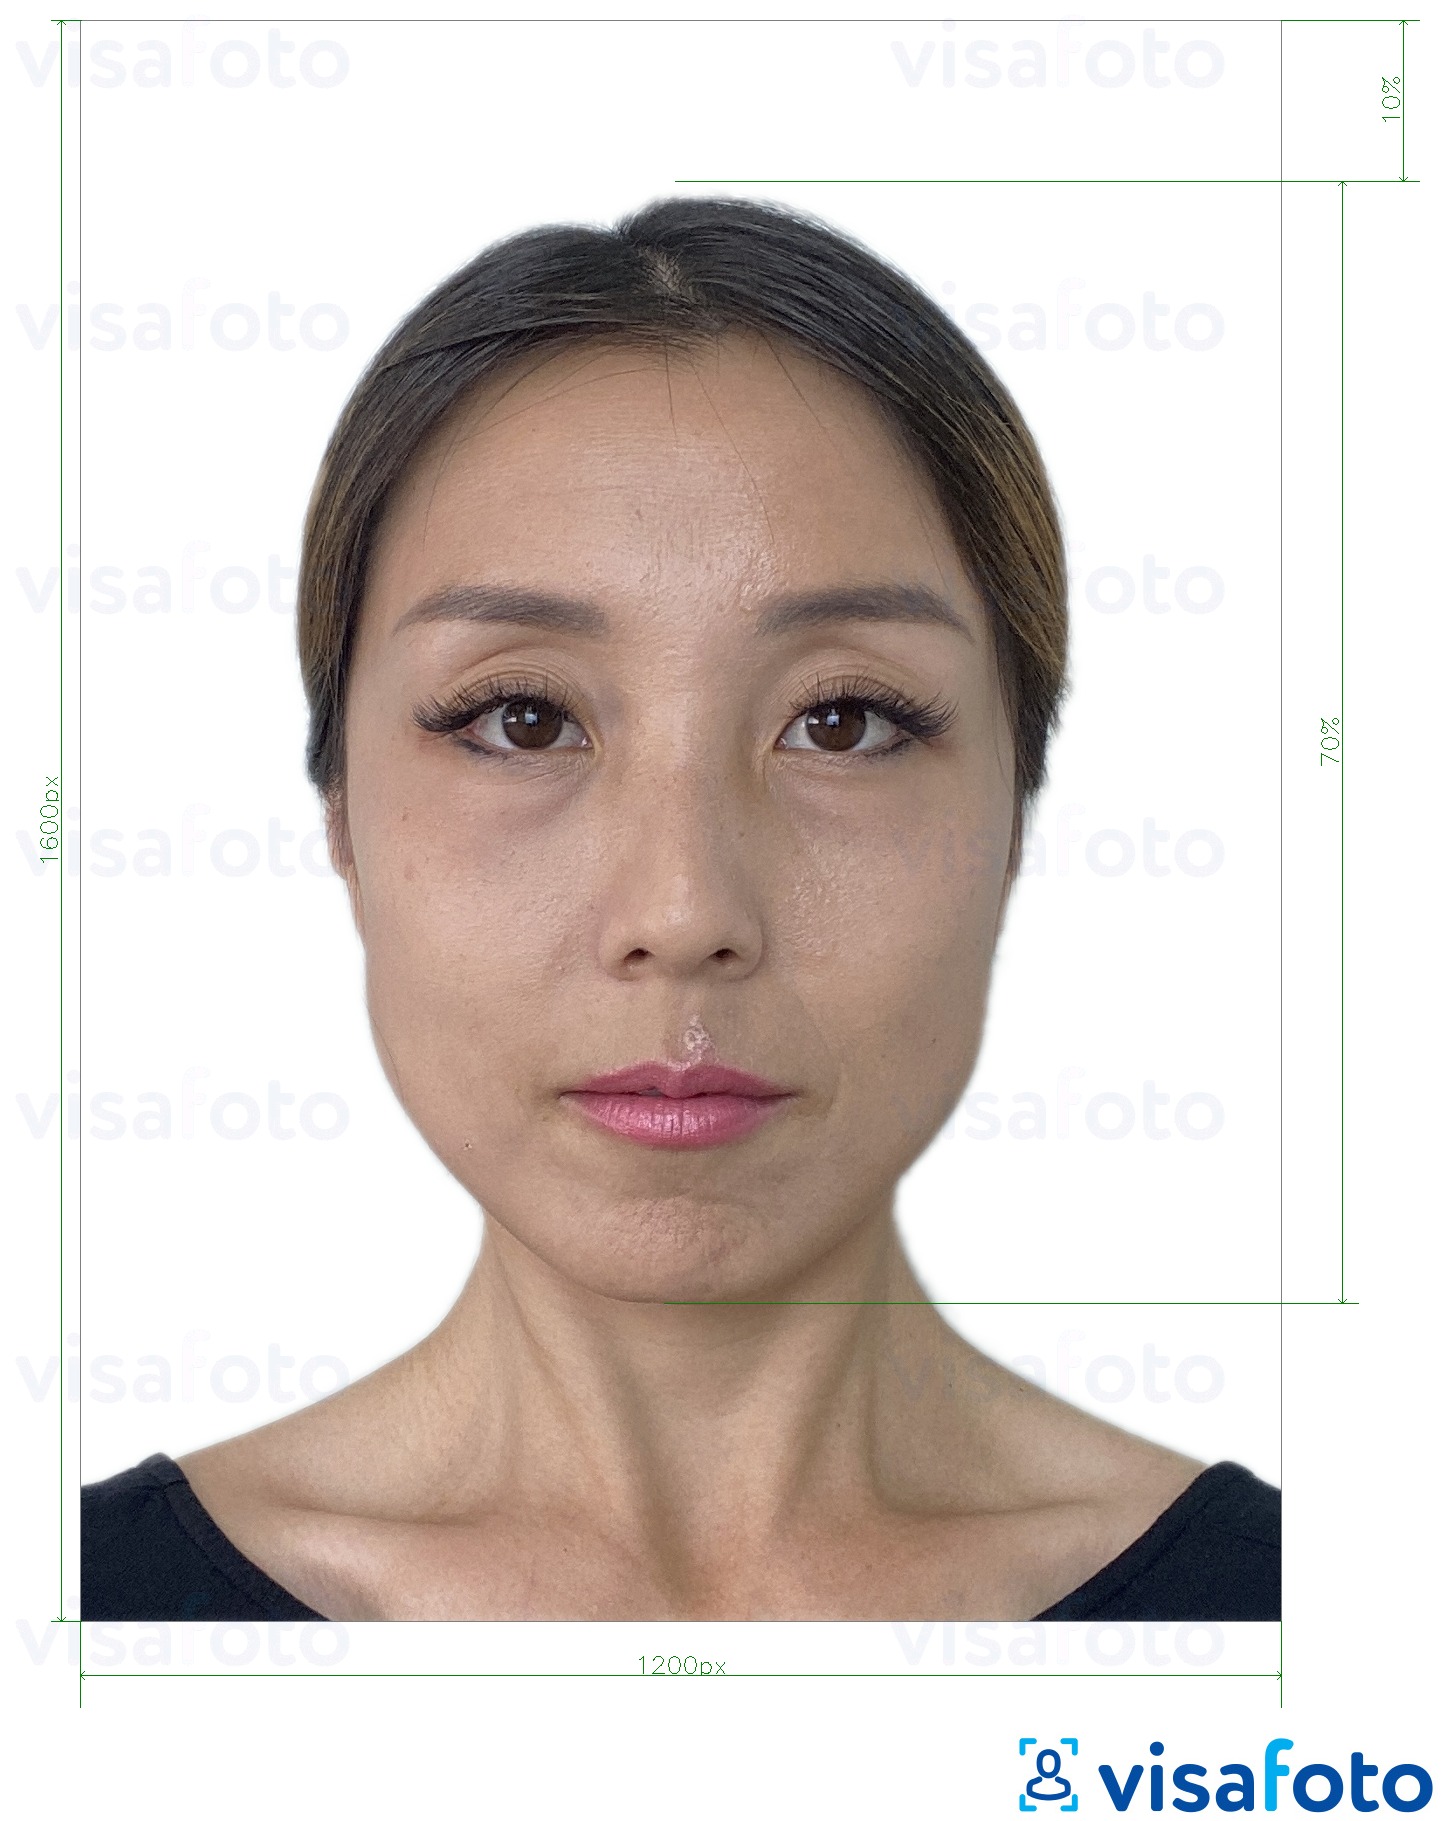 Гонконг онлайн электрондық паспорты 1200x1600 пиксел үшін нақты мөлшер өлшемі бар фото үлгісі